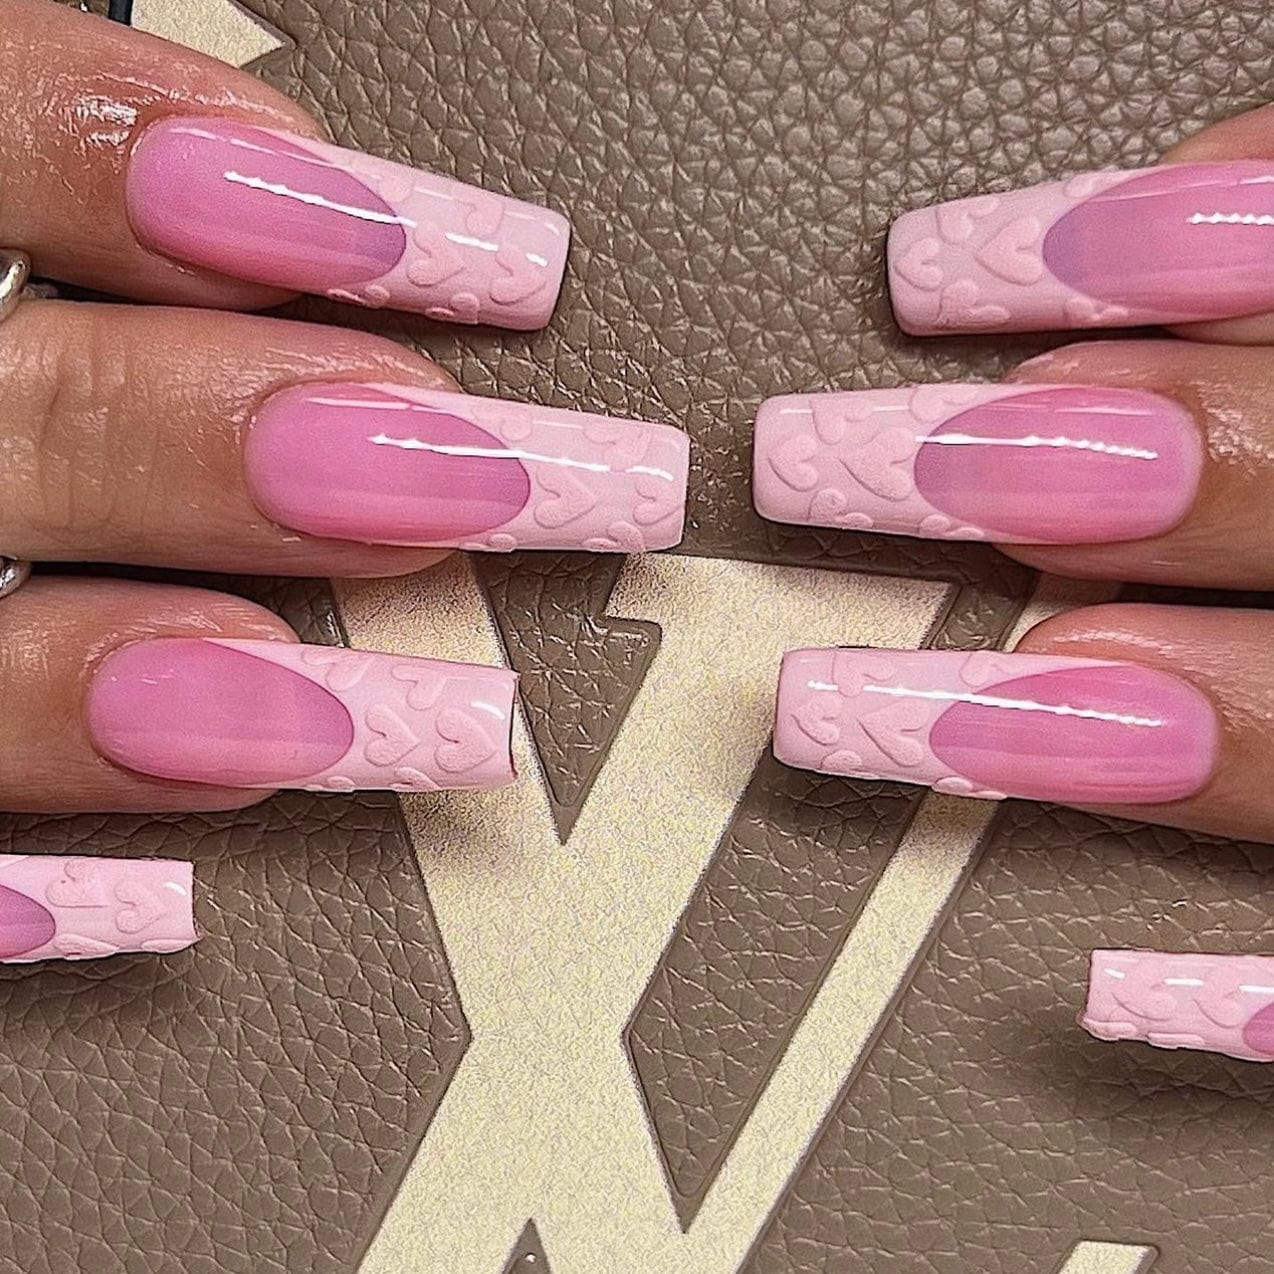 nails pink heart